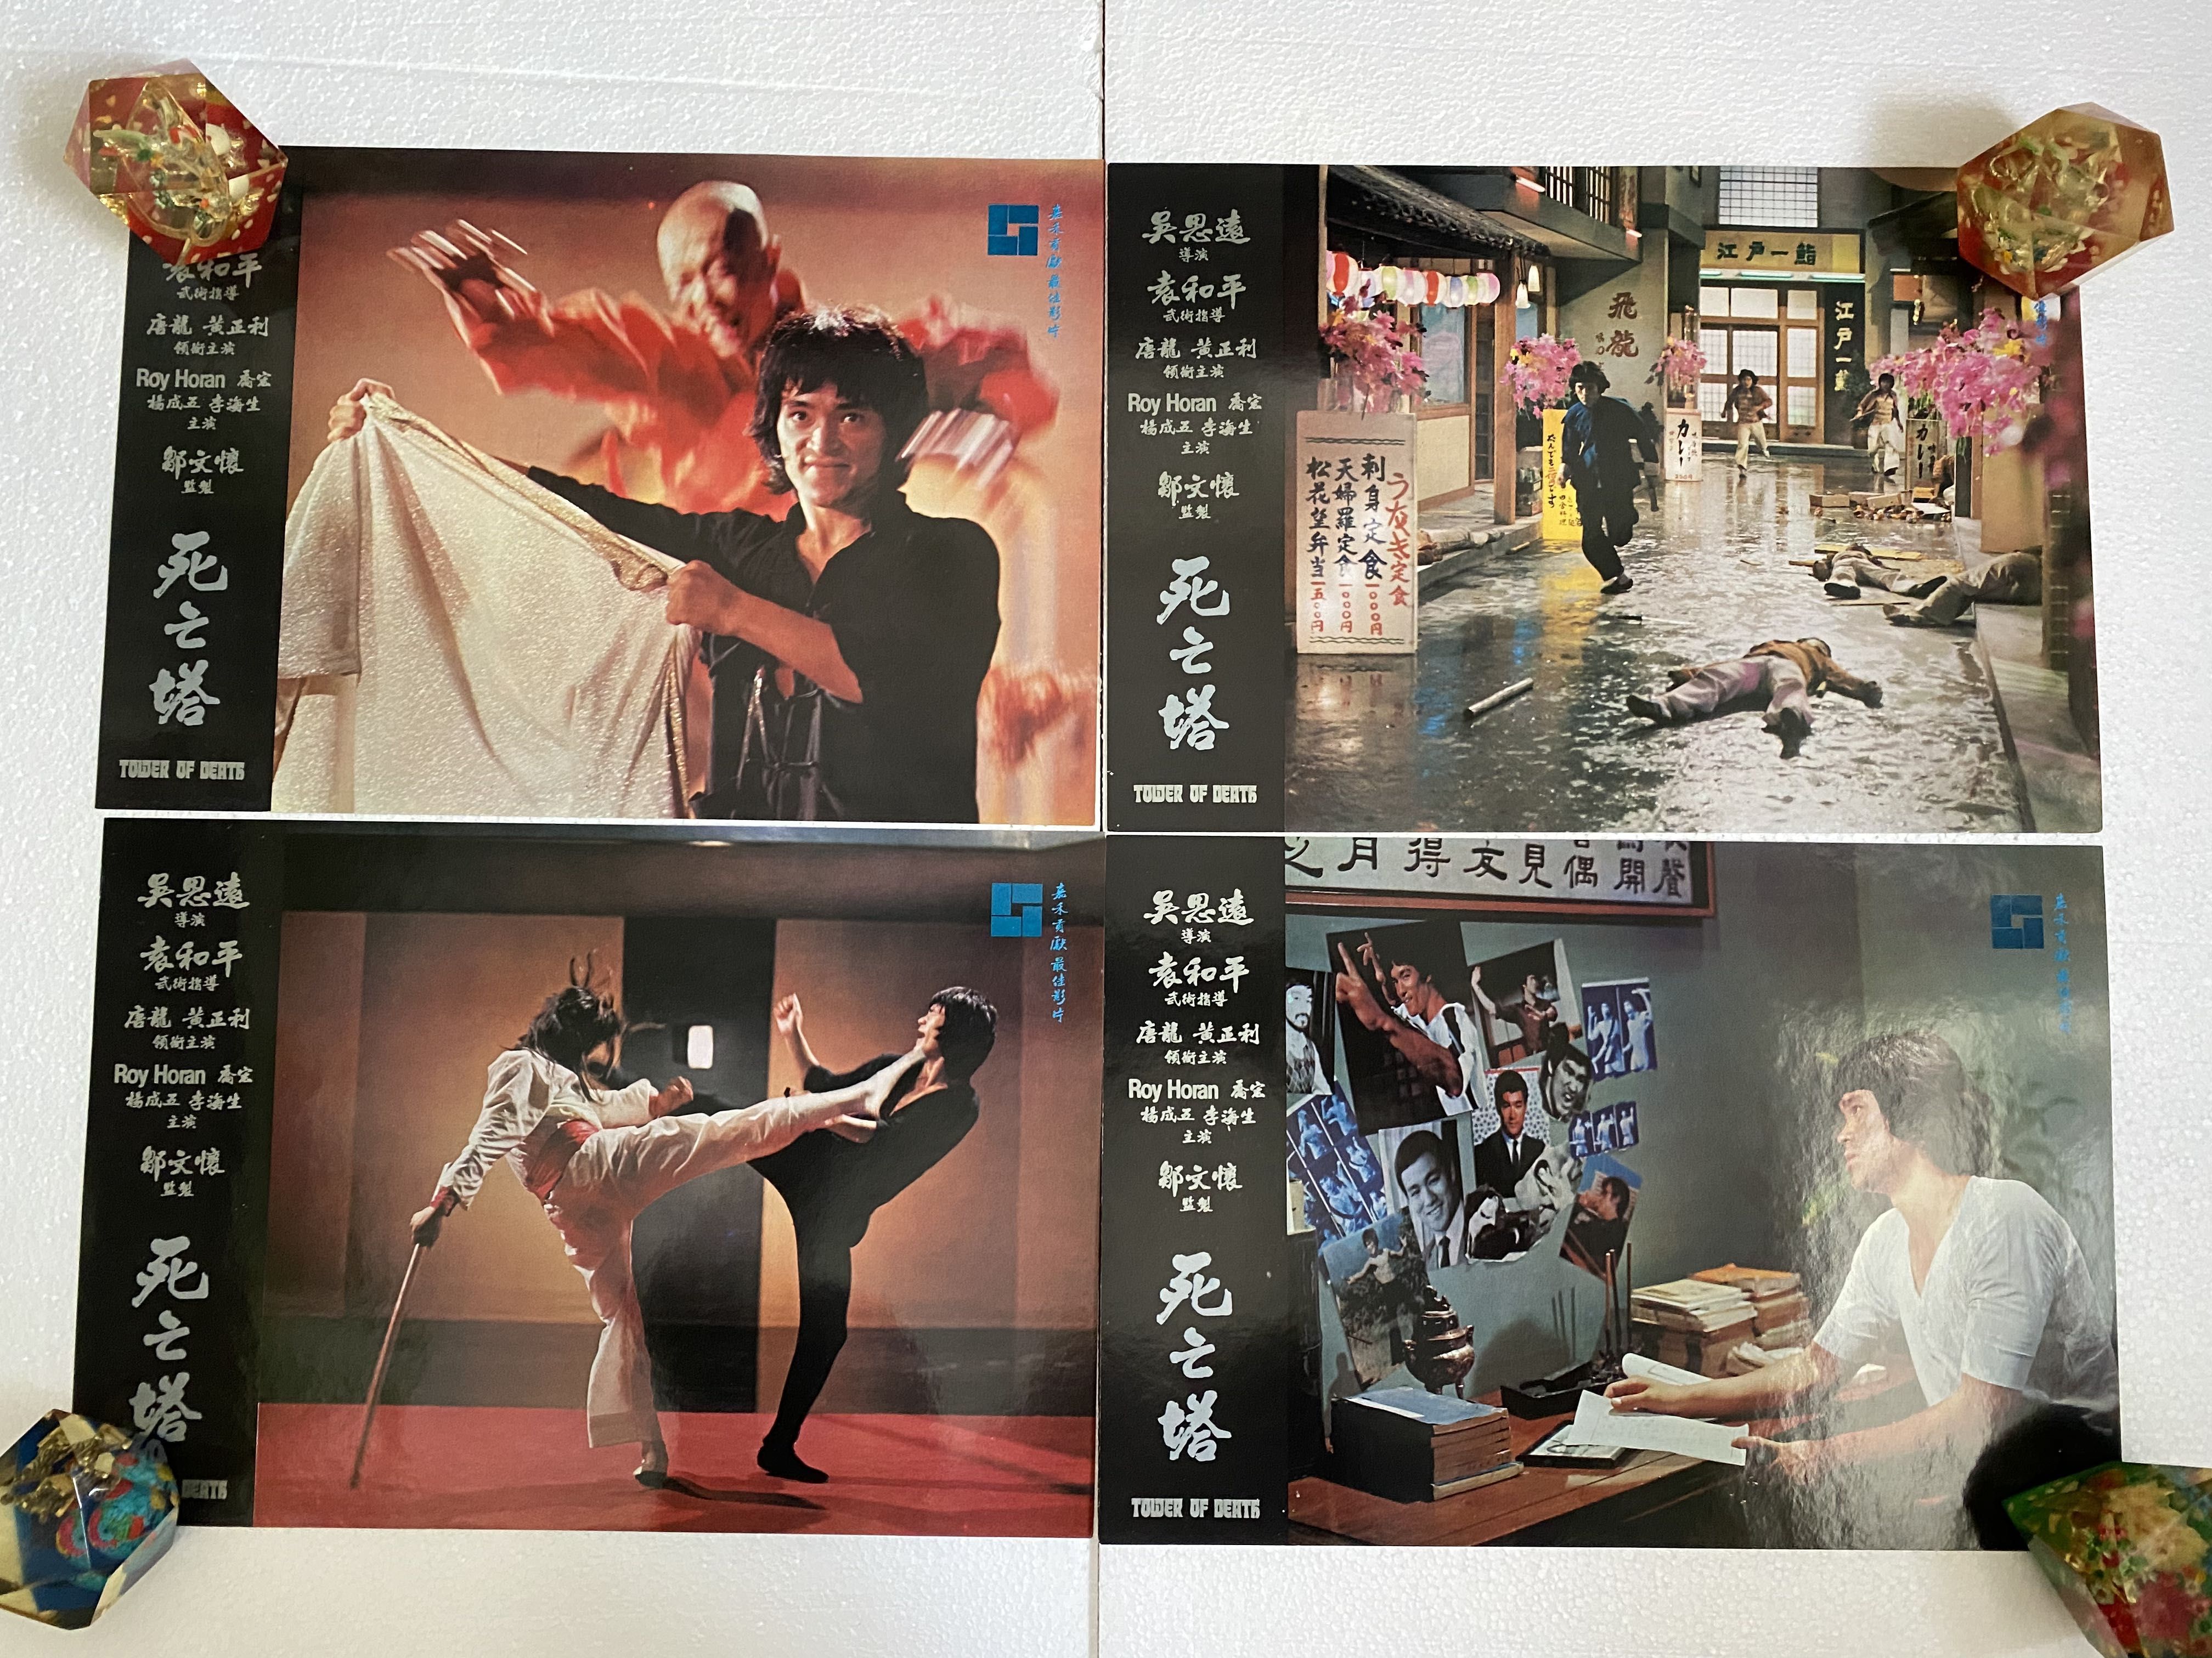 1981年李小龍唐龍死亡塔GAME OF DEATH II 香港版英文版電影戲院大堂 